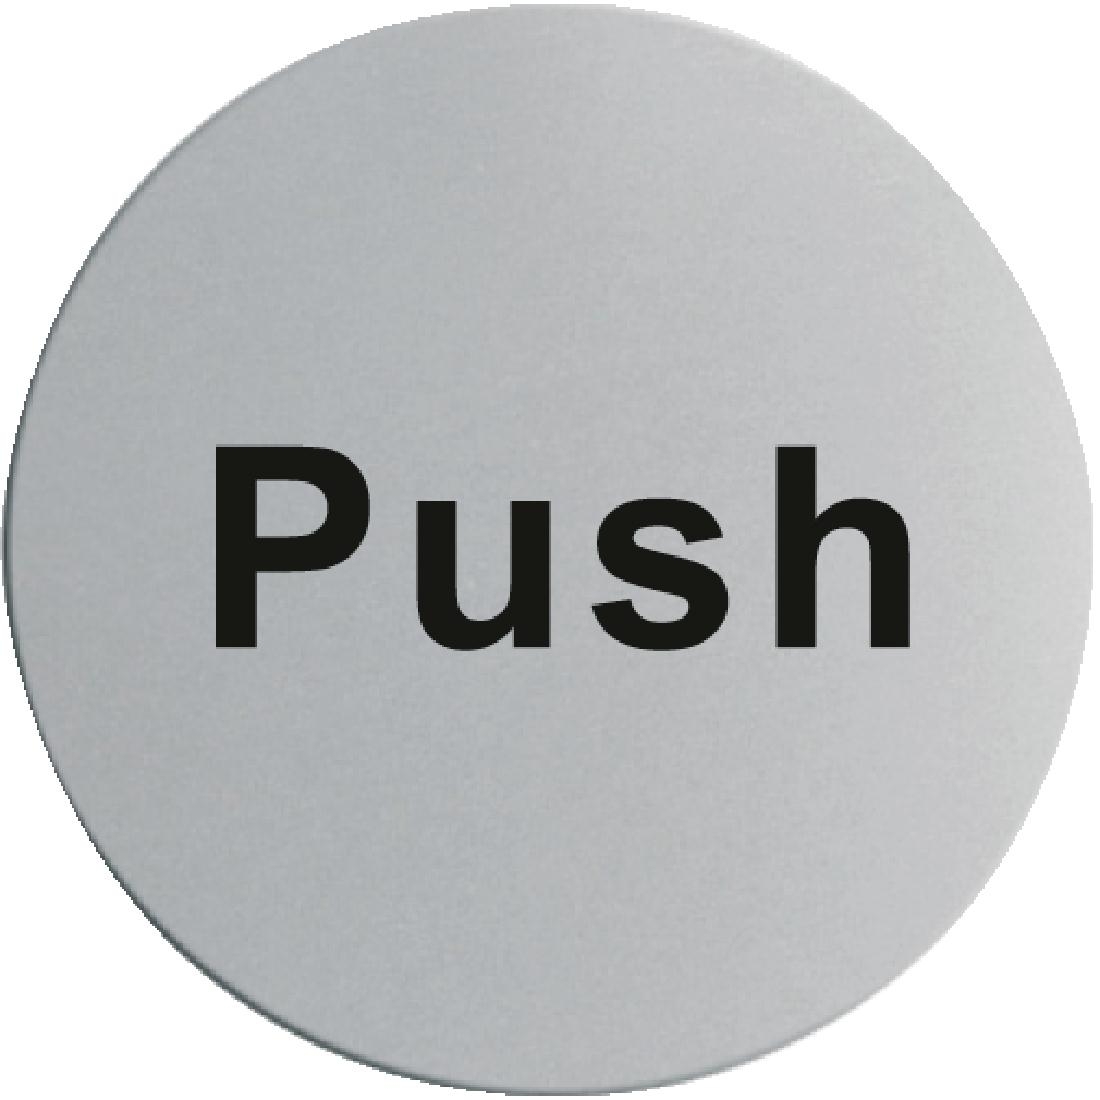 Stainless Steel Door Sign - Push